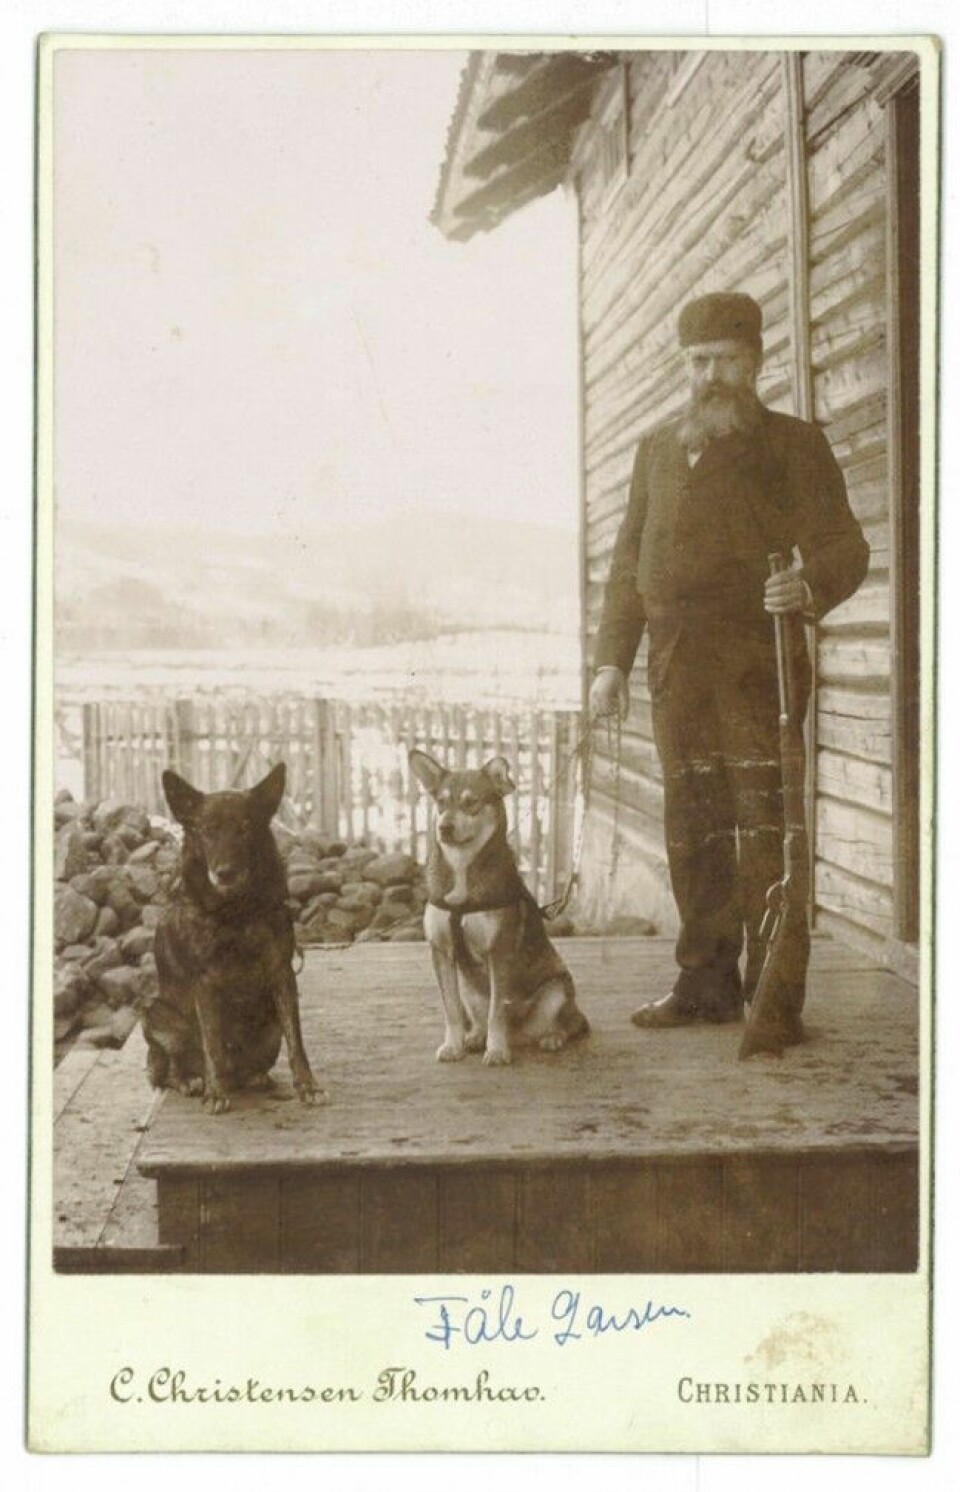 En av storjegerne i Søndre Land, Tåle Larsen, fotografert rundt 1890 med sine elghunder.